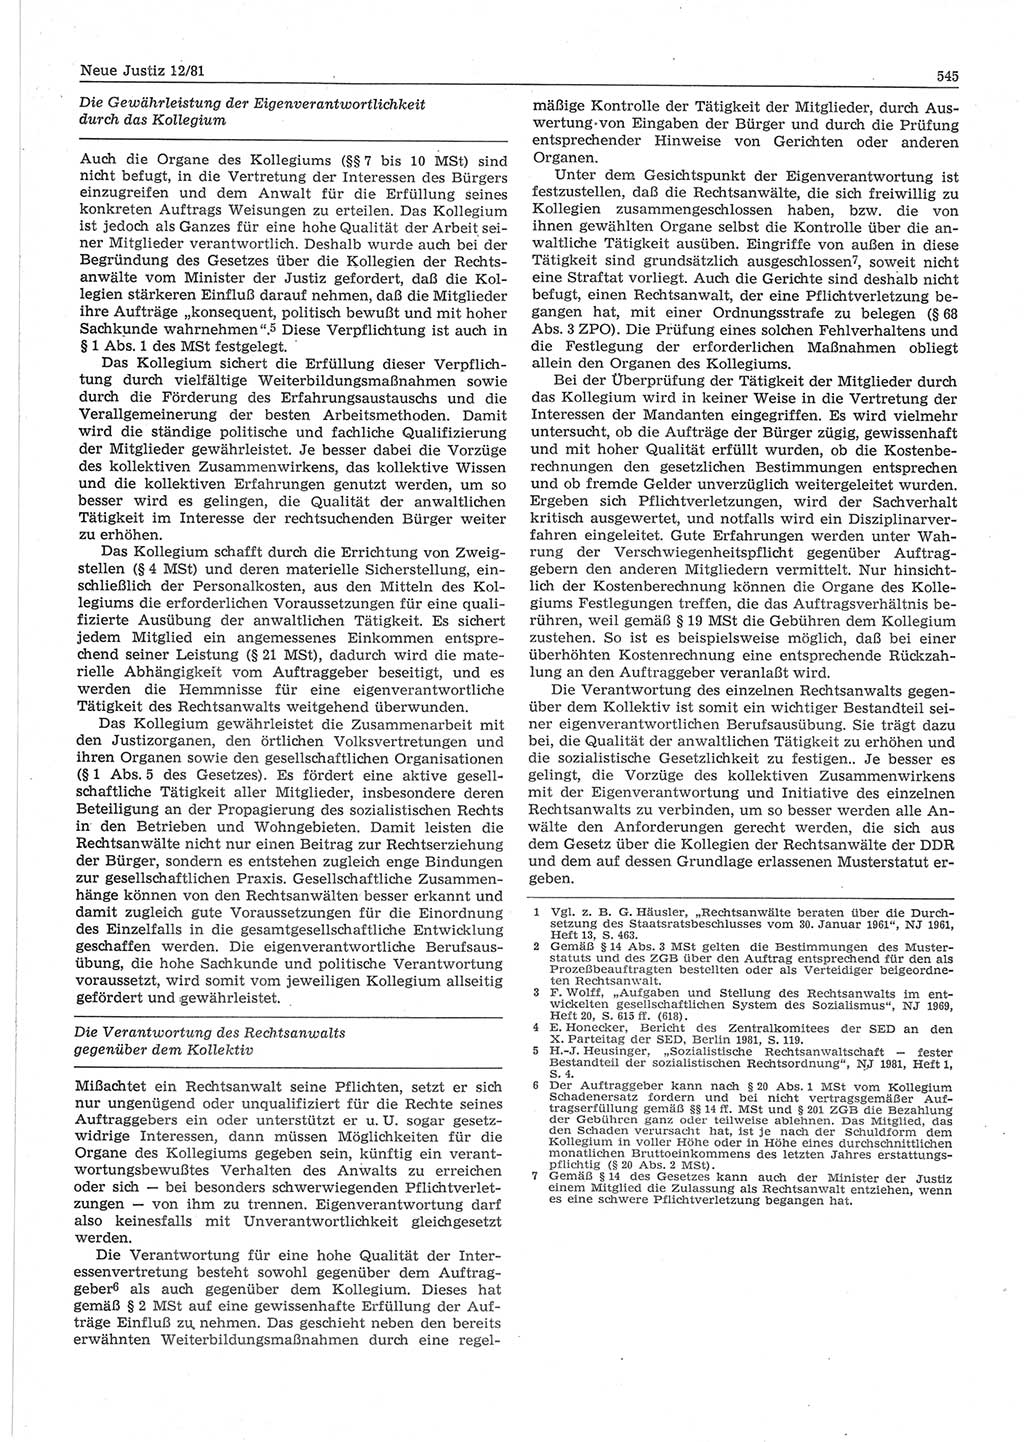 Neue Justiz (NJ), Zeitschrift für sozialistisches Recht und Gesetzlichkeit [Deutsche Demokratische Republik (DDR)], 35. Jahrgang 1981, Seite 545 (NJ DDR 1981, S. 545)